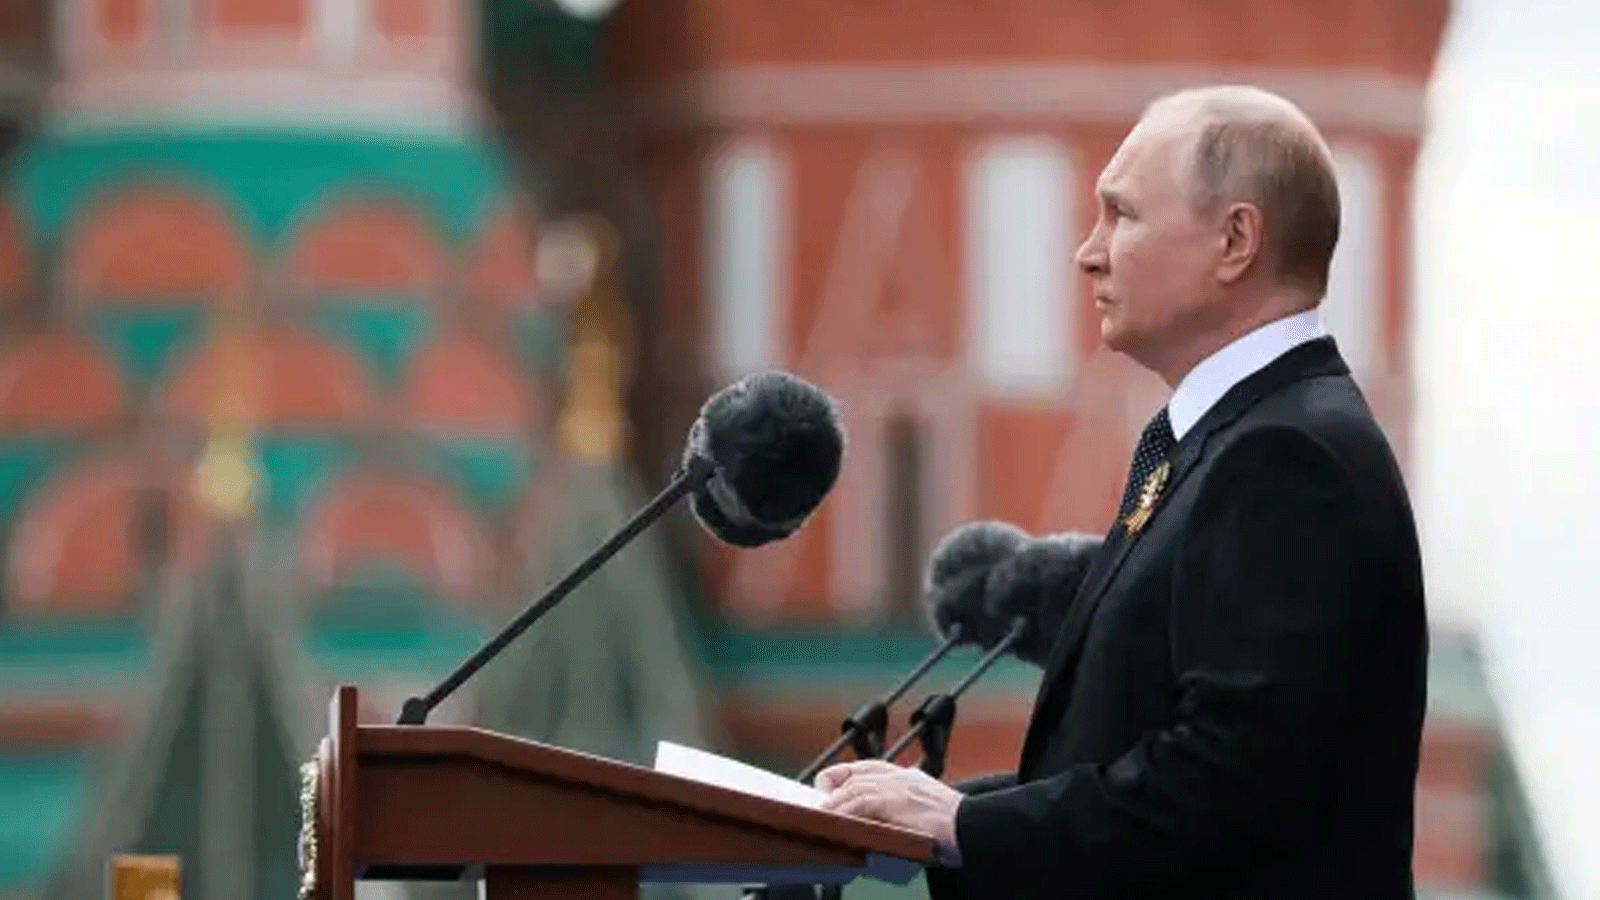 الرئيس الروسي فلاديمير بوتين يلقي كلمة خلال العرض العسكري ليوم النصر في الميدان الأحمر بوسط موسكو في 9 مايو\ أيار 2022